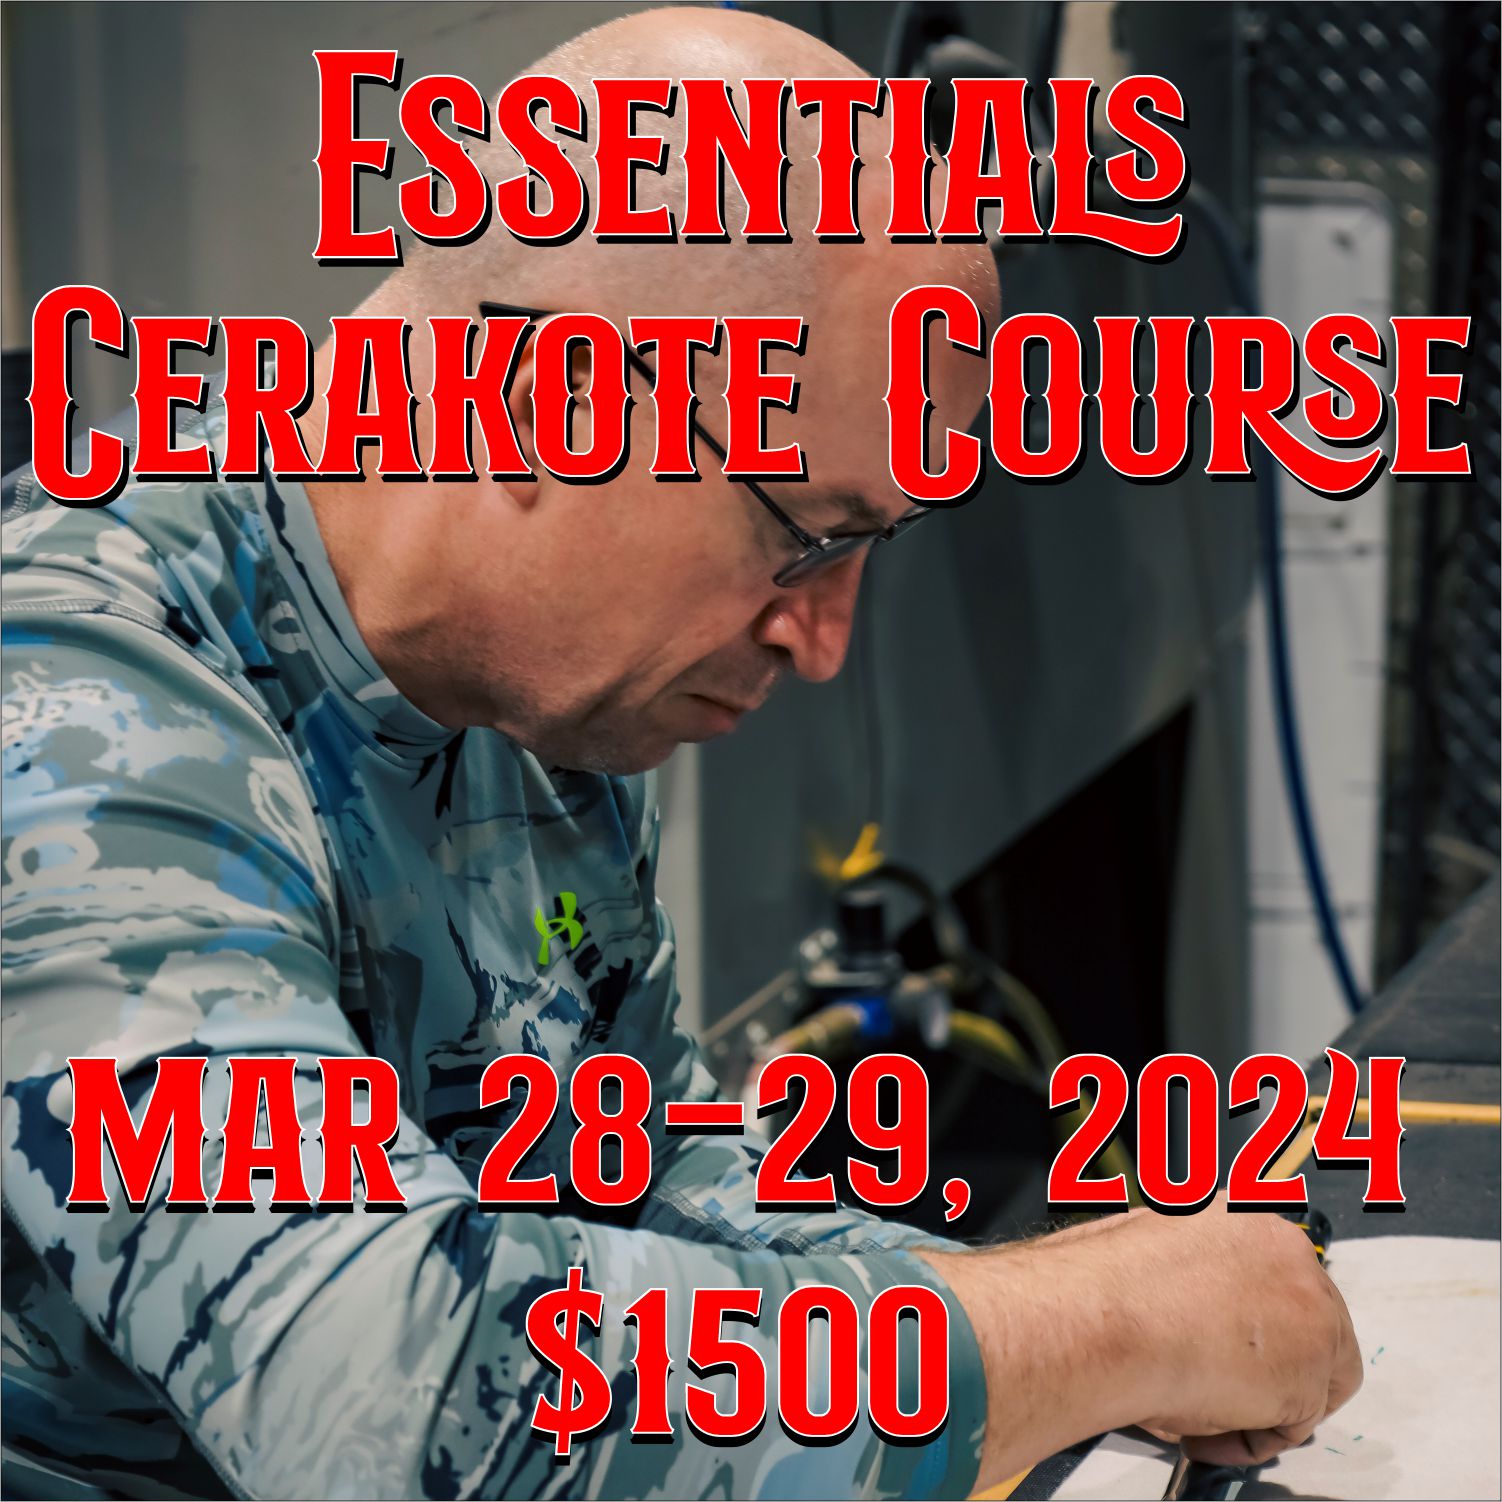 Learn how to Cerakote – Tip: Branson Cerakote – Light Armor Blog